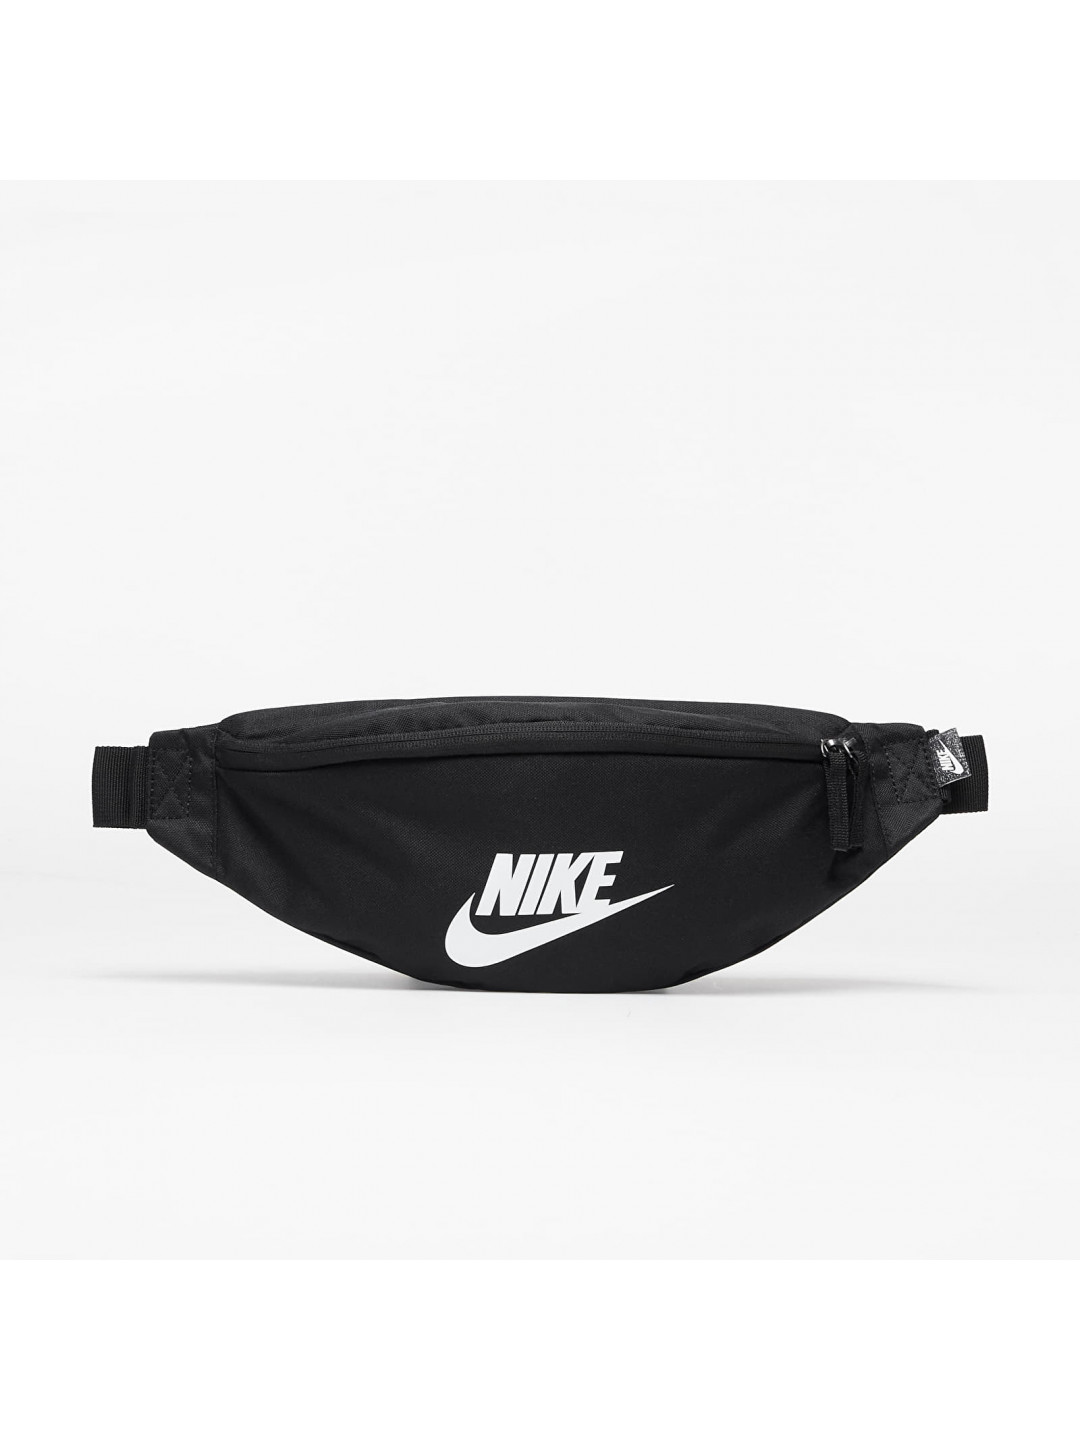 Nike Waistpack Black Black White